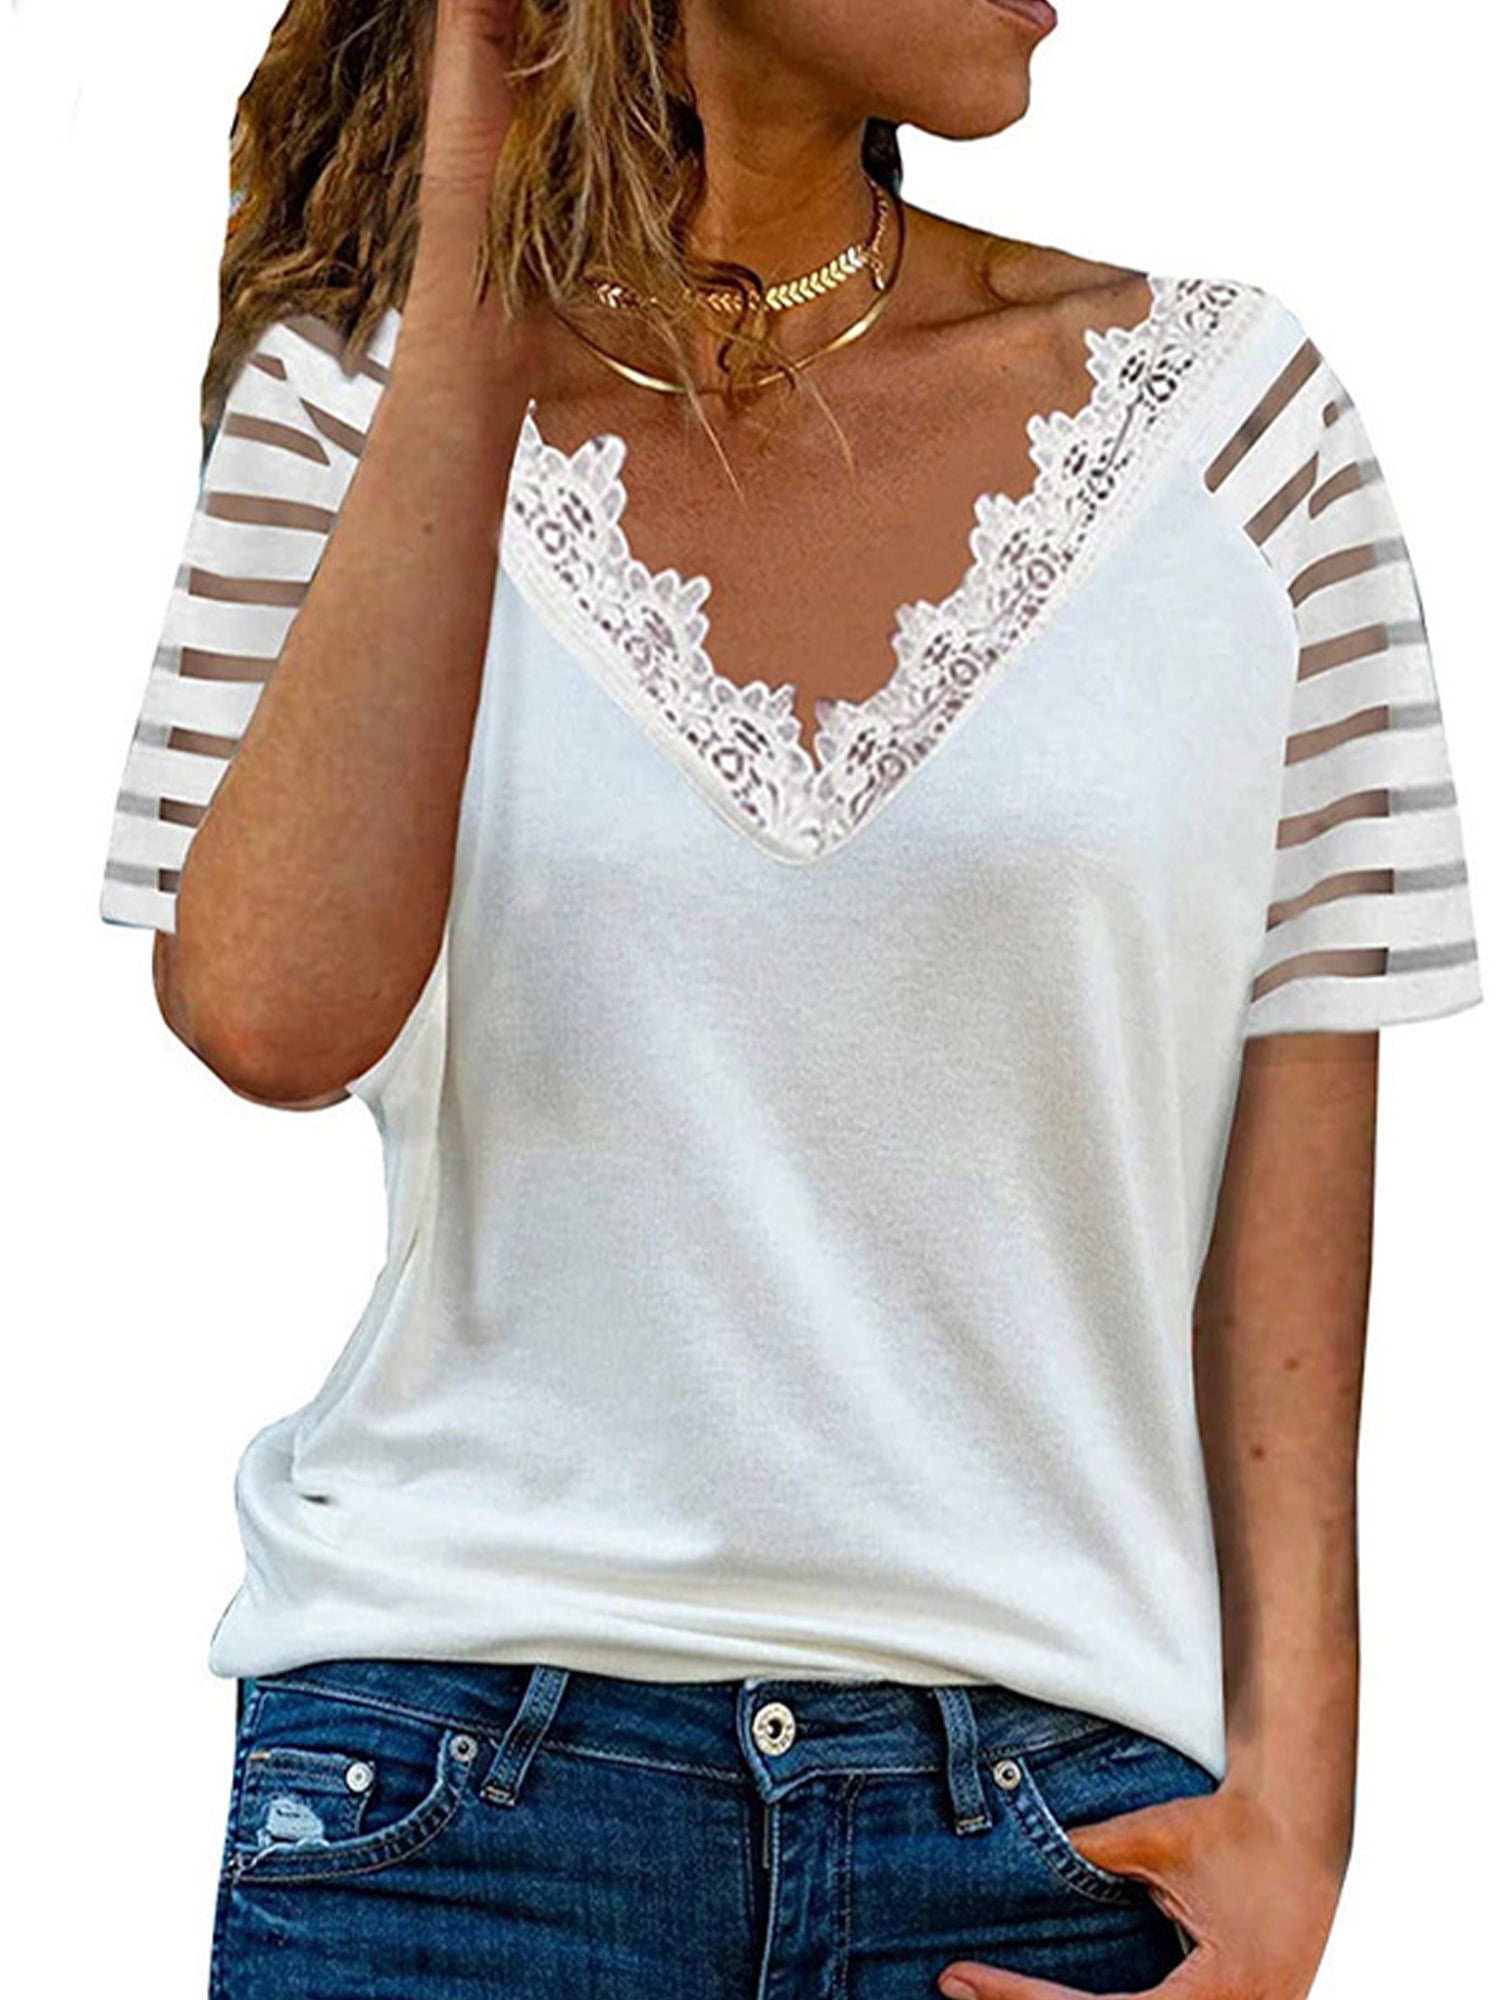 Women V-neck Blouse Stylish Lace Trim Tee Shirt Casual Short Sleeve ...